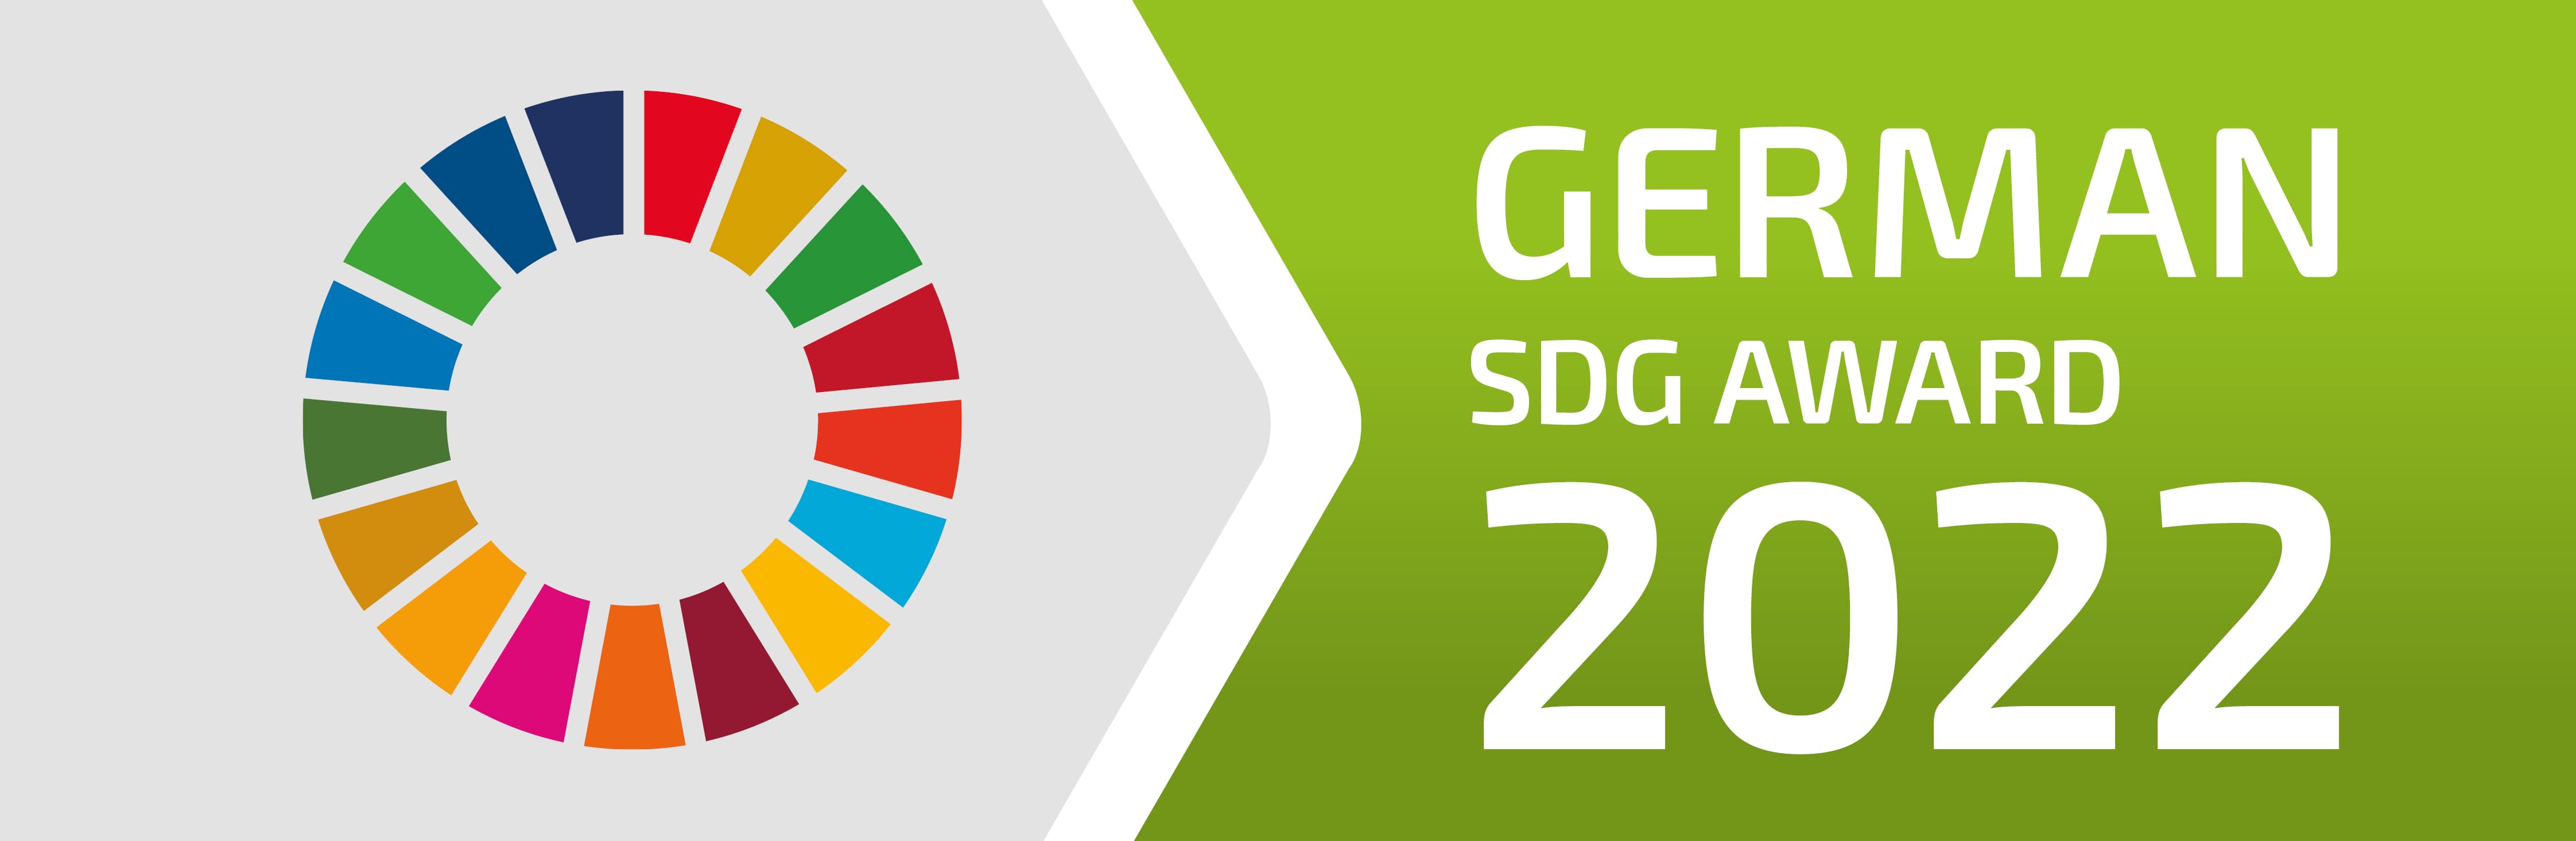 German SDG Award